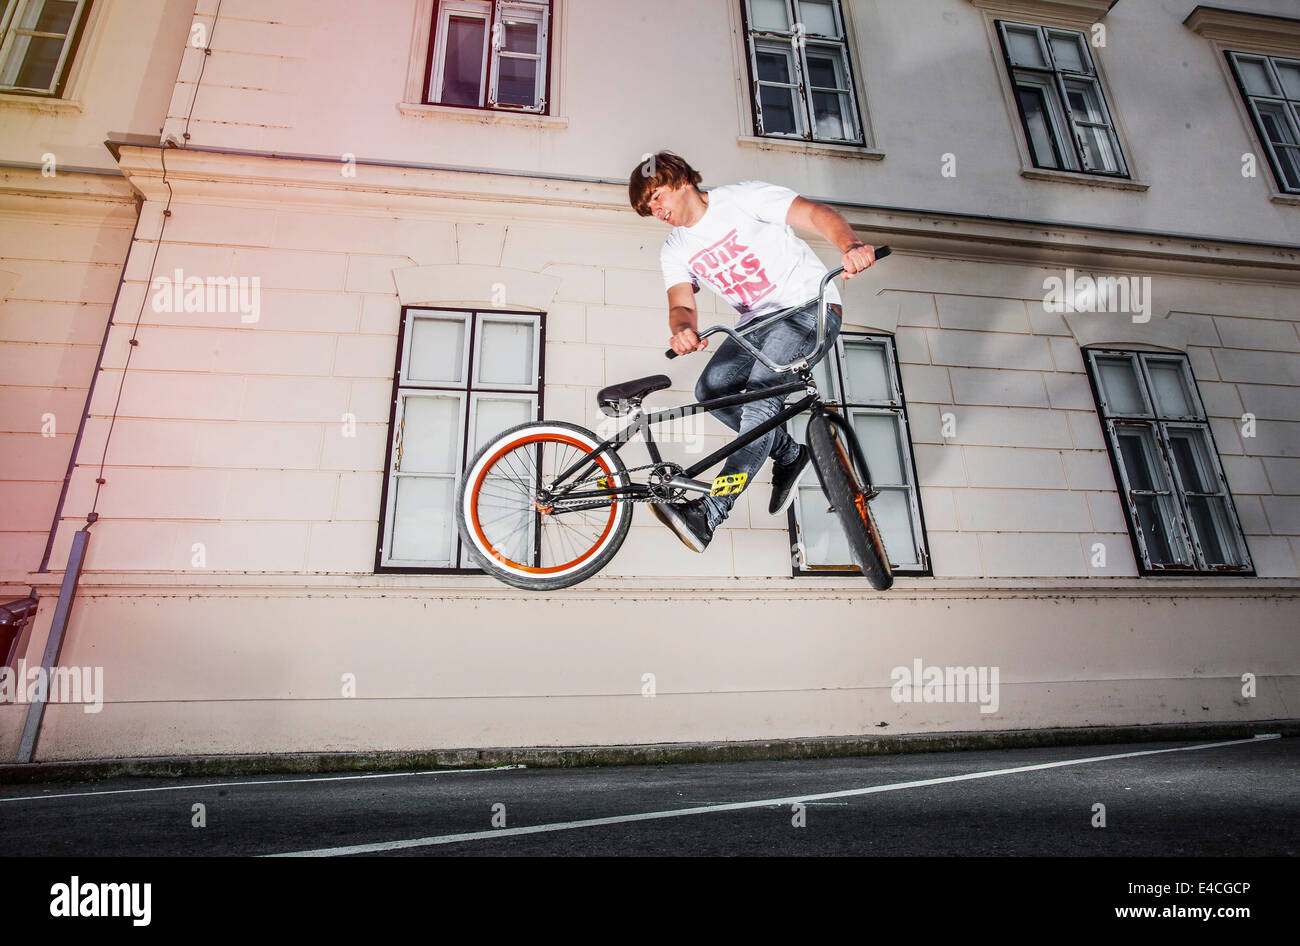 BMX-Biker einen Stunt vor einem Haus durchführen Stockfoto